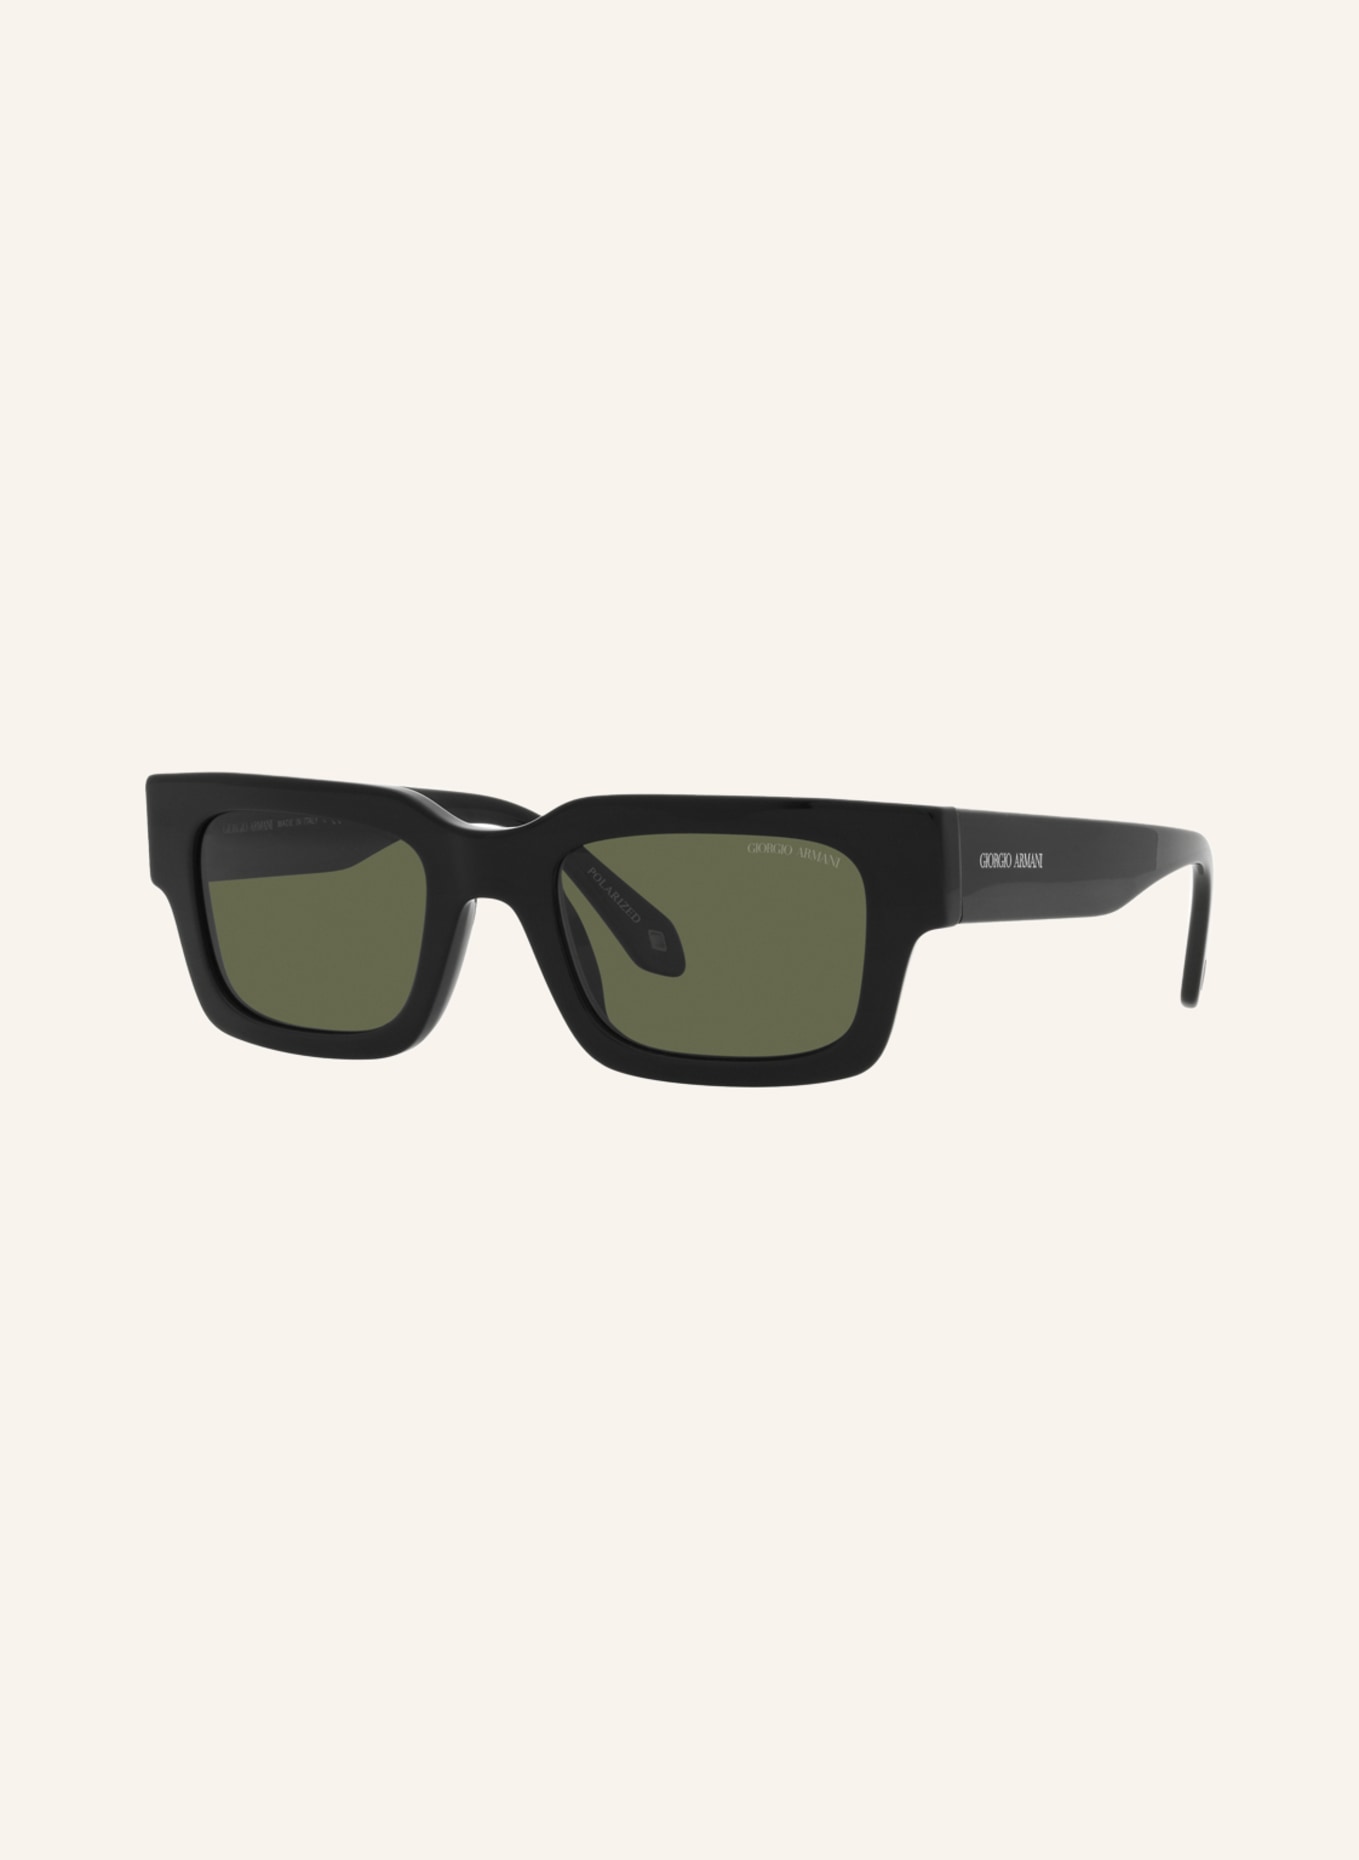 GIORGIO ARMANI Sunglasses AR8184, Color: 587558 - BLACK/DARK GRAY (Image 1)